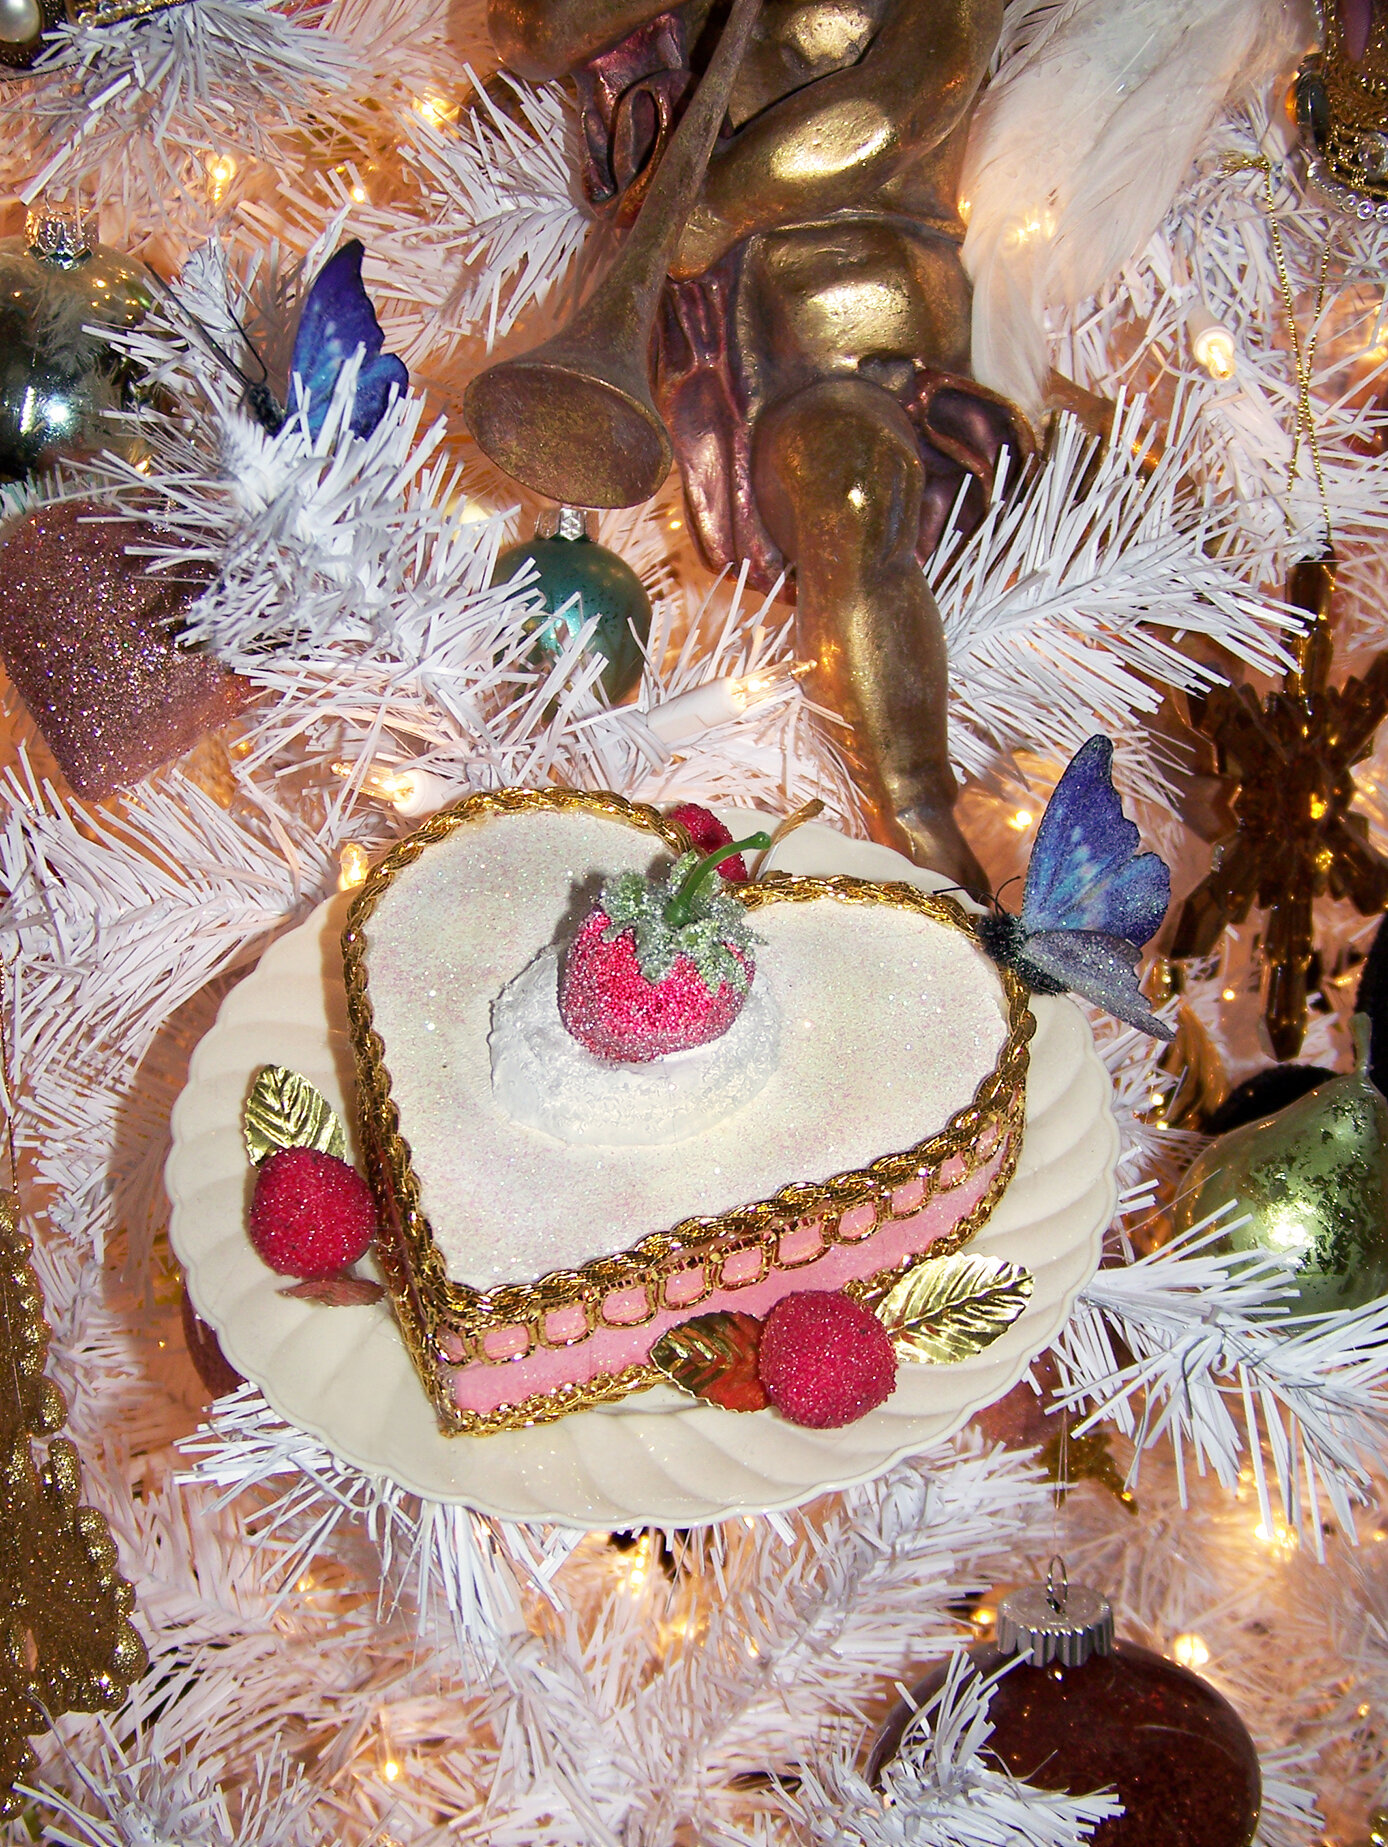  Marie Antoinette cake ornament 